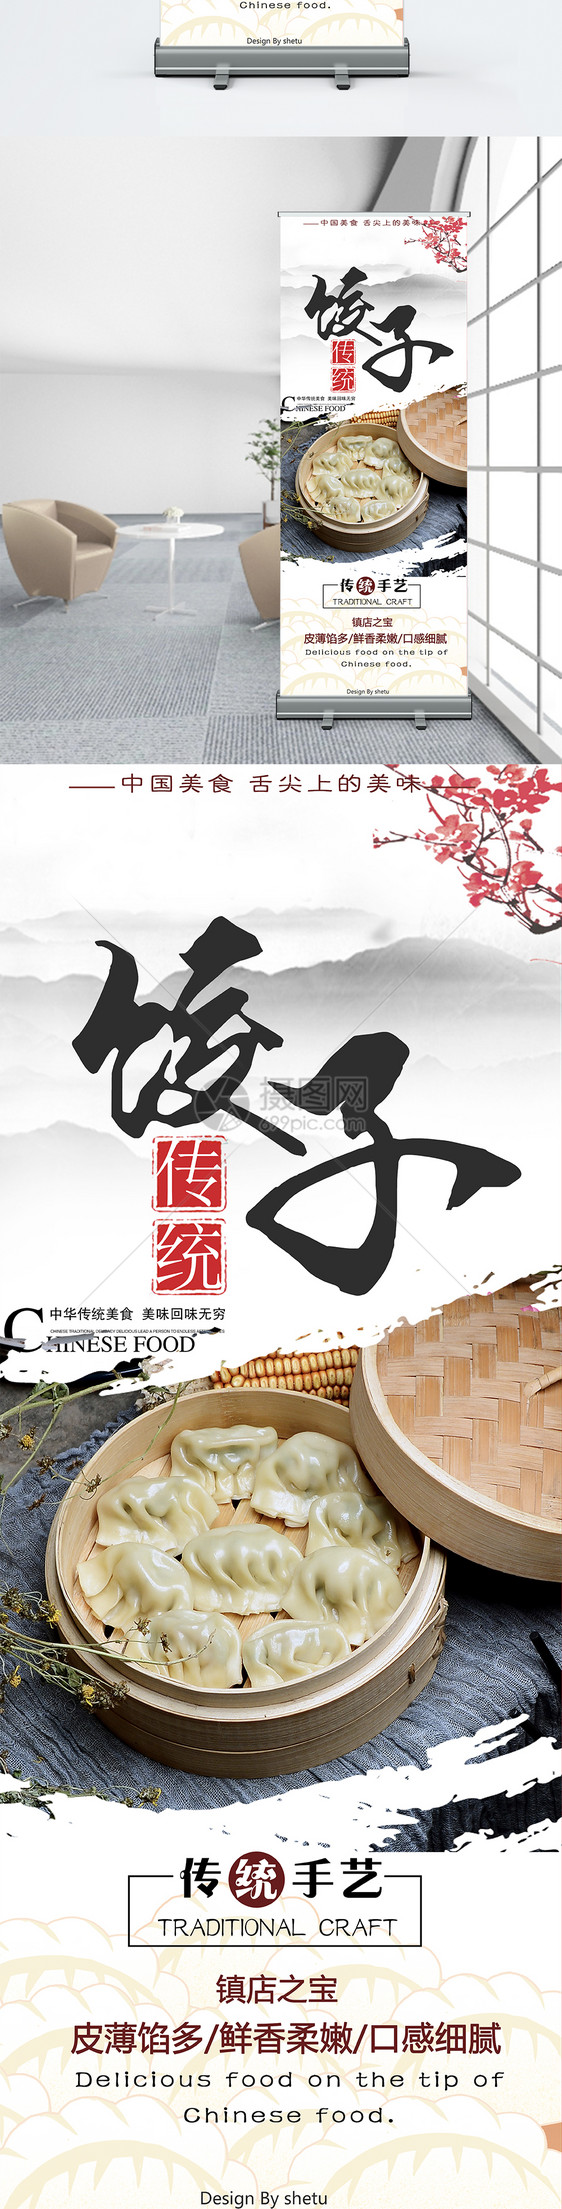 美食饺子促销展架图片